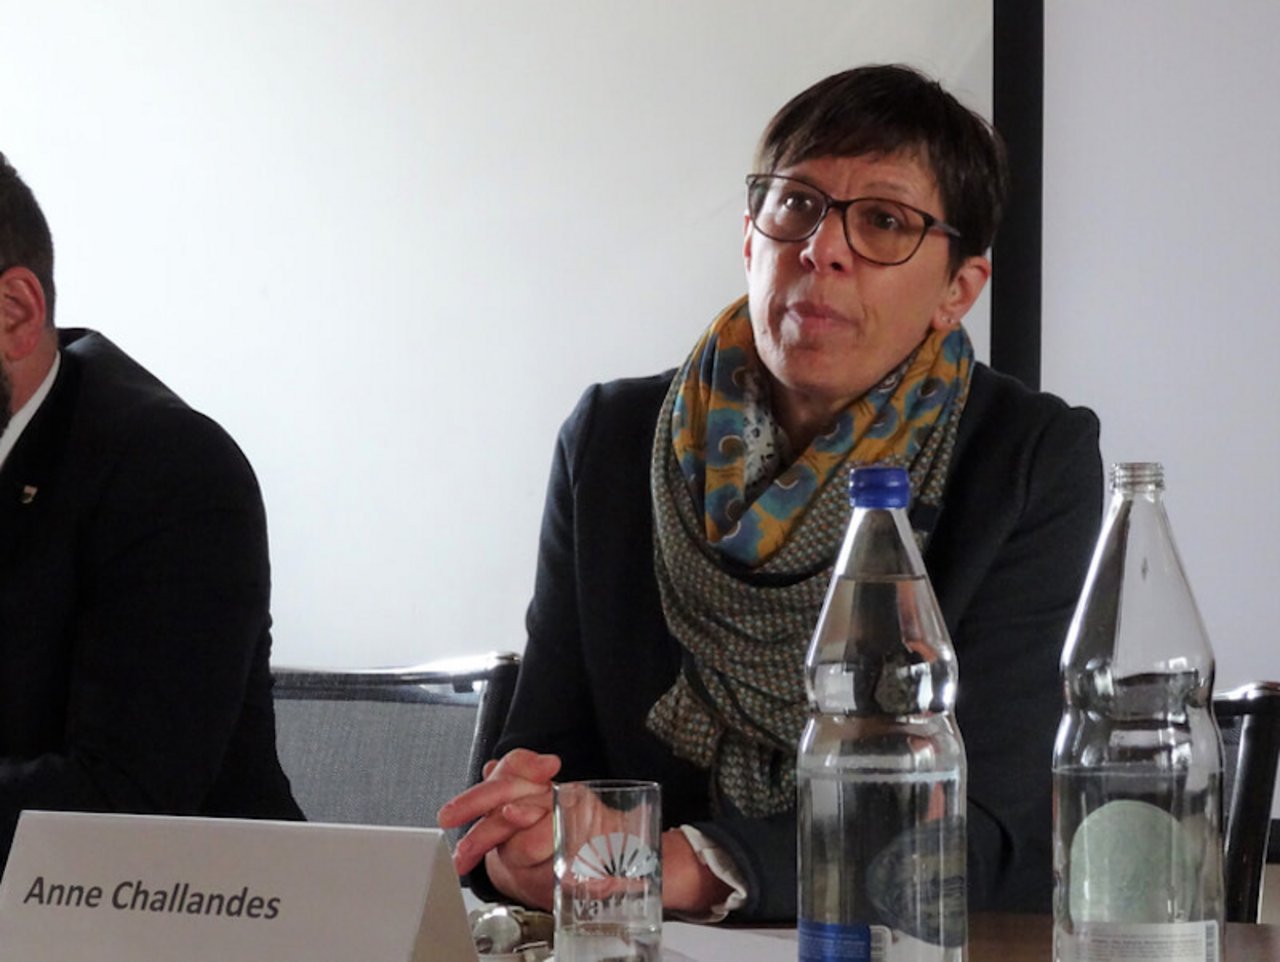 Anne Challandes führt weiter, was ihre Vorgängerin Christine Bühler mit viel Herzblut zu erkämpfen versuchte: soziale Gerechtigkeit für Frauen in der Landwirtschaft. (Bild lid/mg))